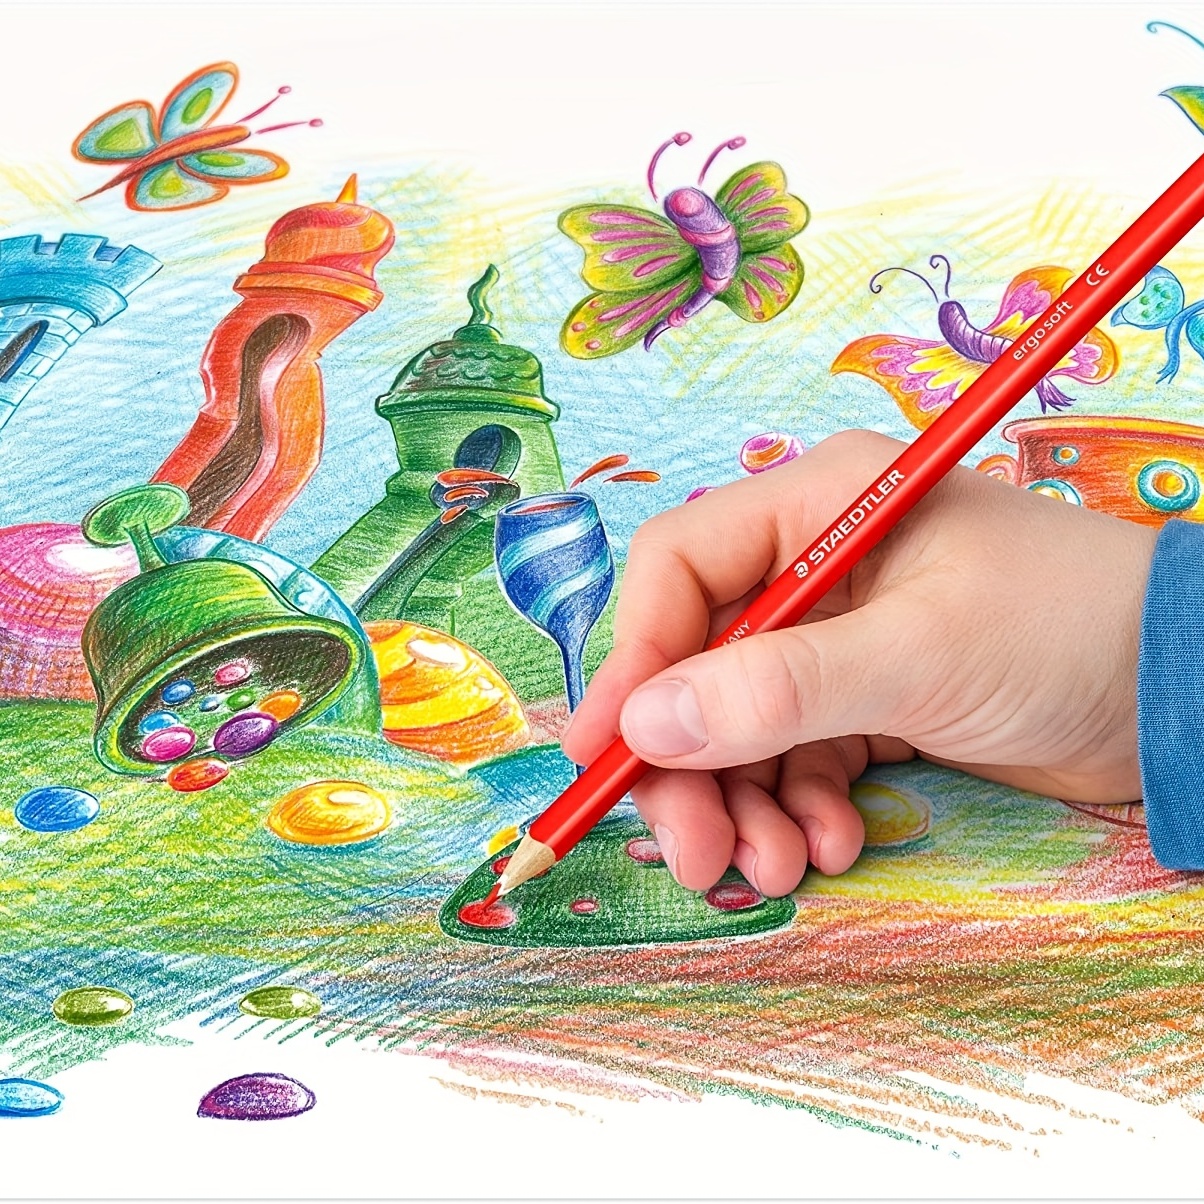 Colour Painting Pencil, Coloured Pencils Set, Soft Core Drawing